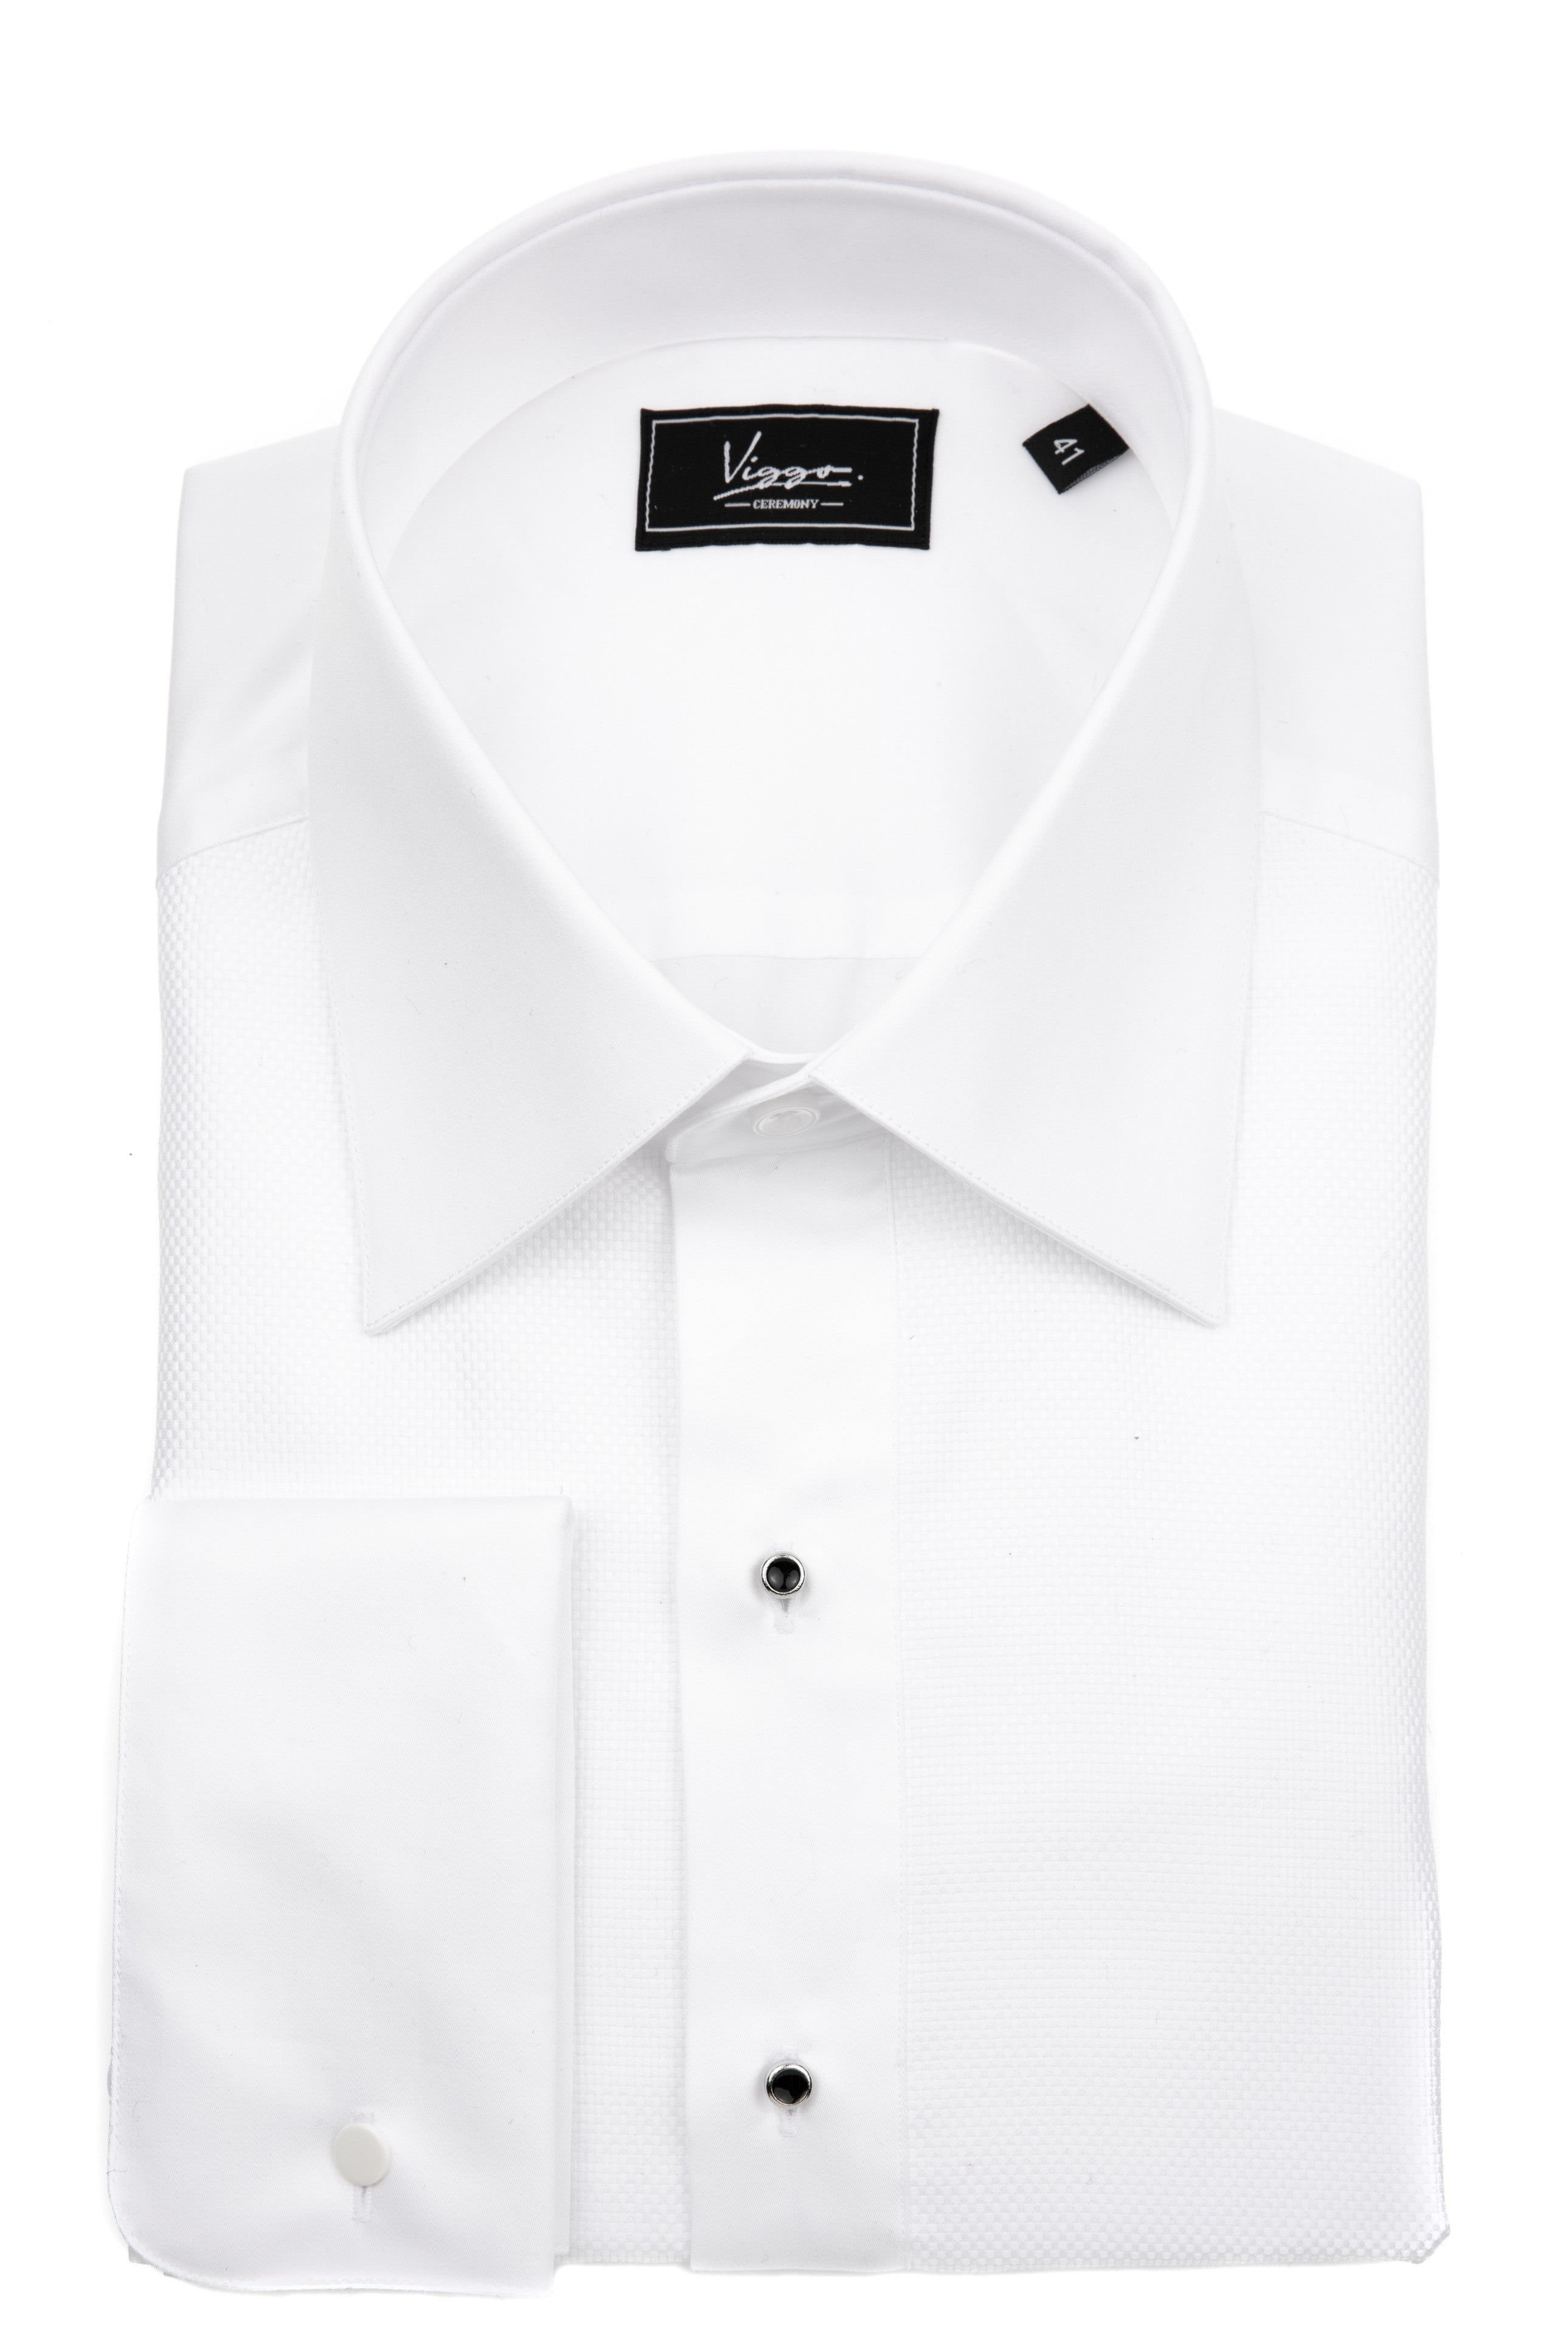 Camicia bianca finemente lavorata con bottoni gioiello